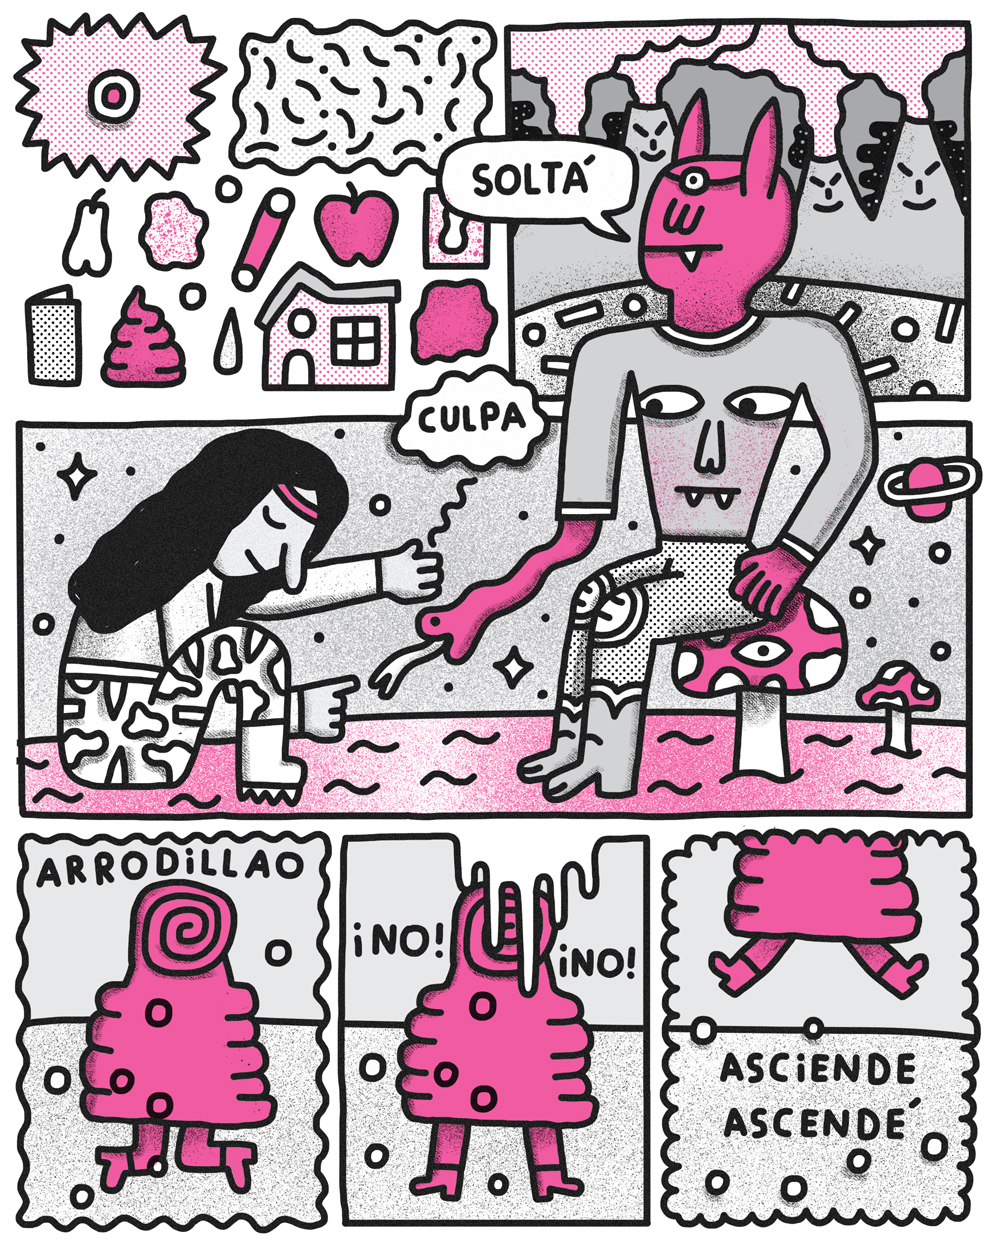 la vaca rosa comic strip magenta pink Liberation heart